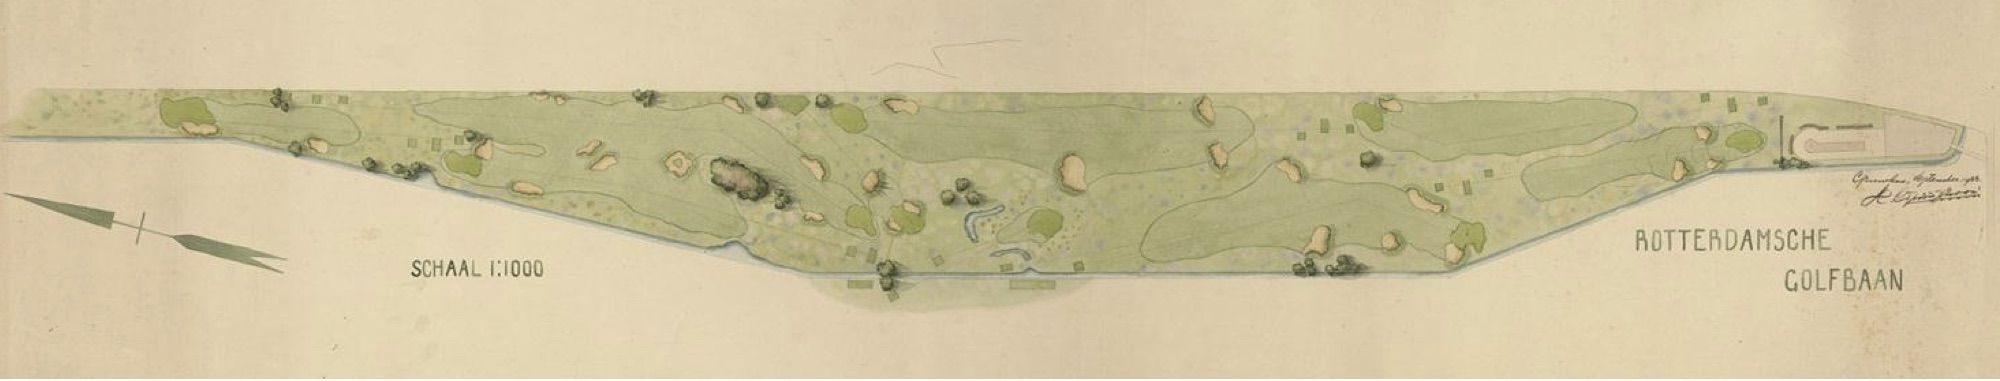 Tekening van de Rotterdamsche Golfbaan 1933